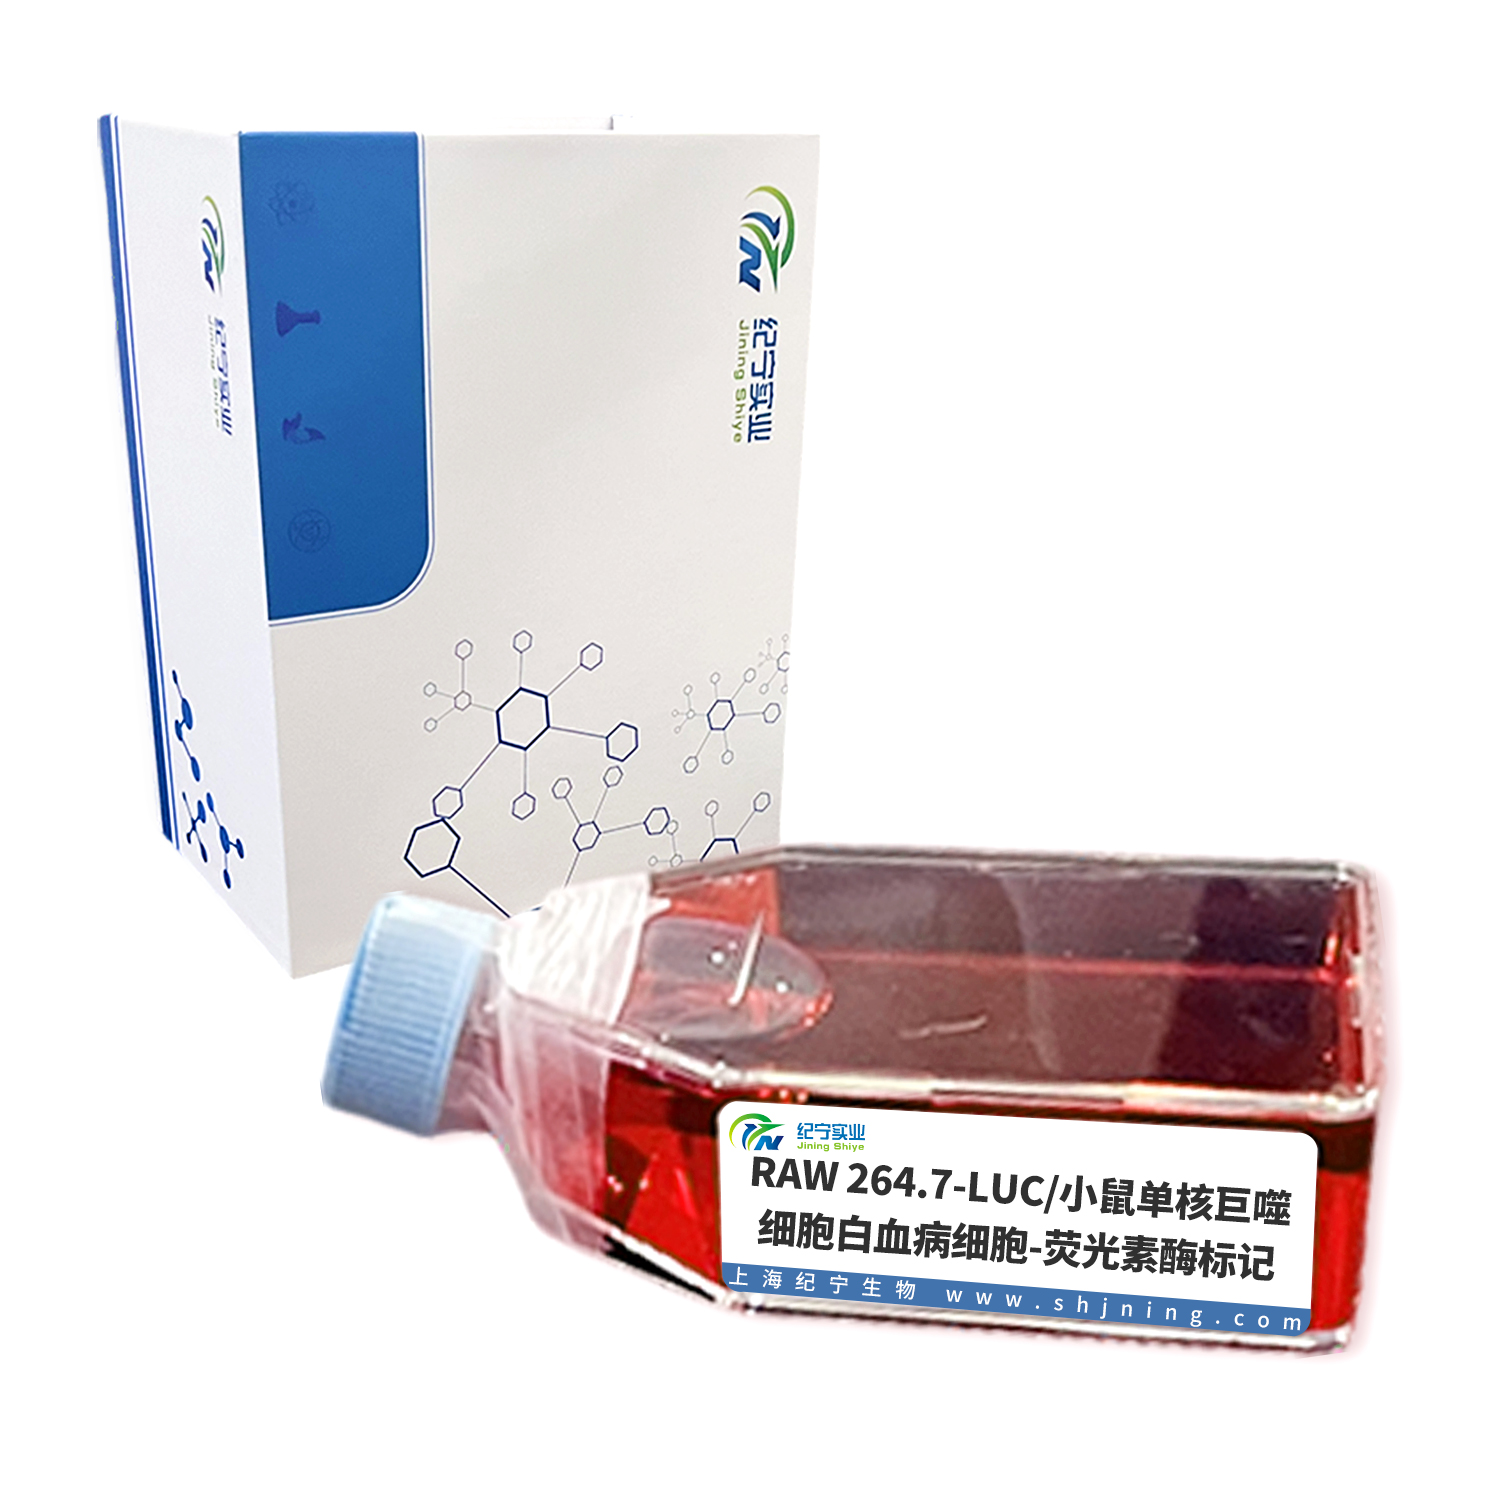 RAW 264.7-LUC/小鼠单核巨噬细胞白血病细胞-荧光素酶标记